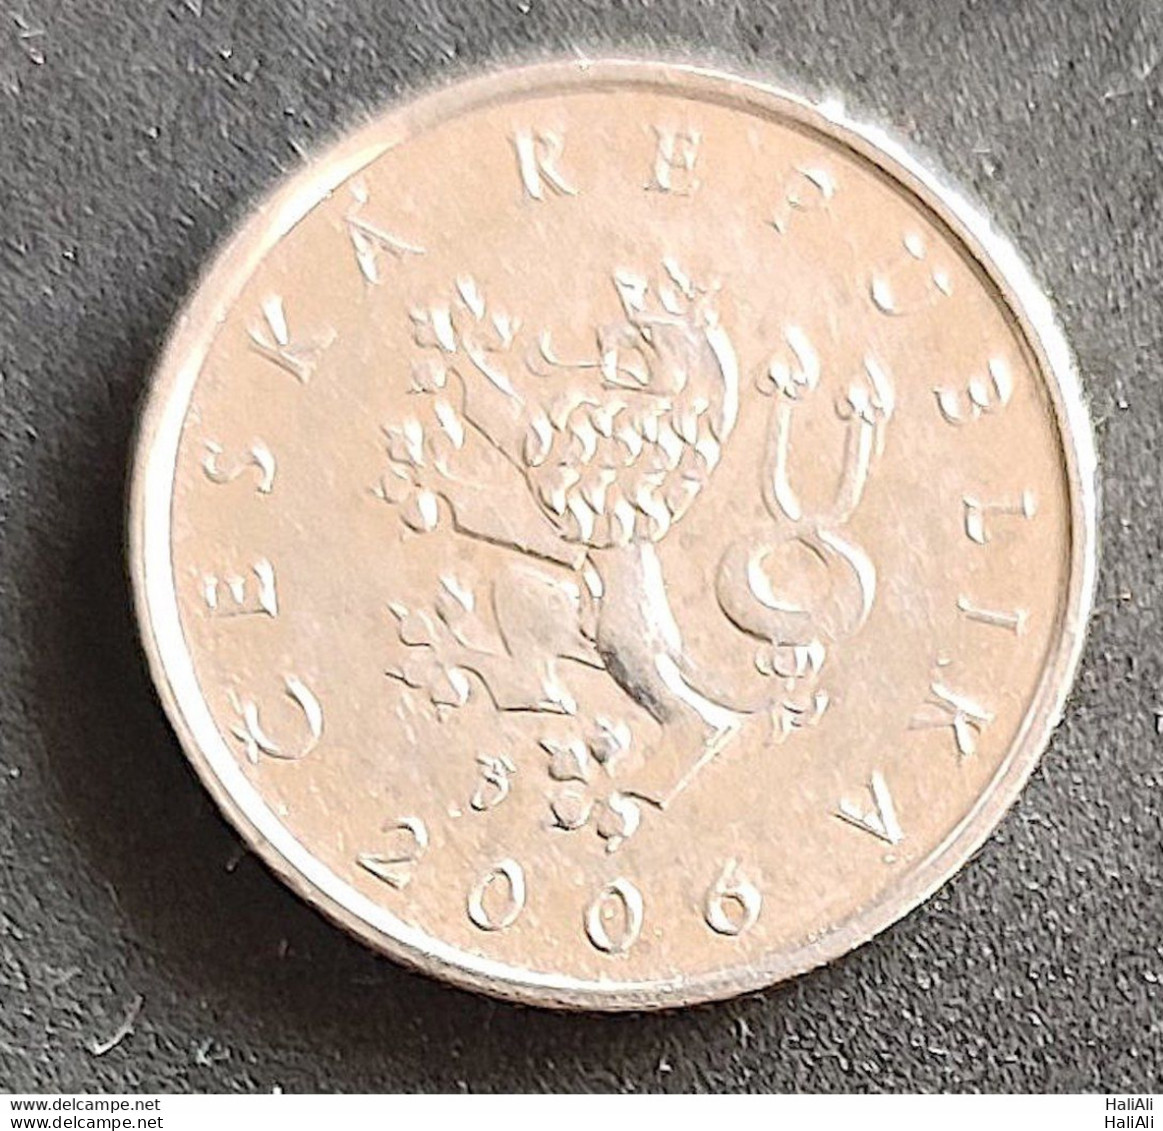 Coin Czech Repubilc 2006 1 Korun 1 - Czech Republic